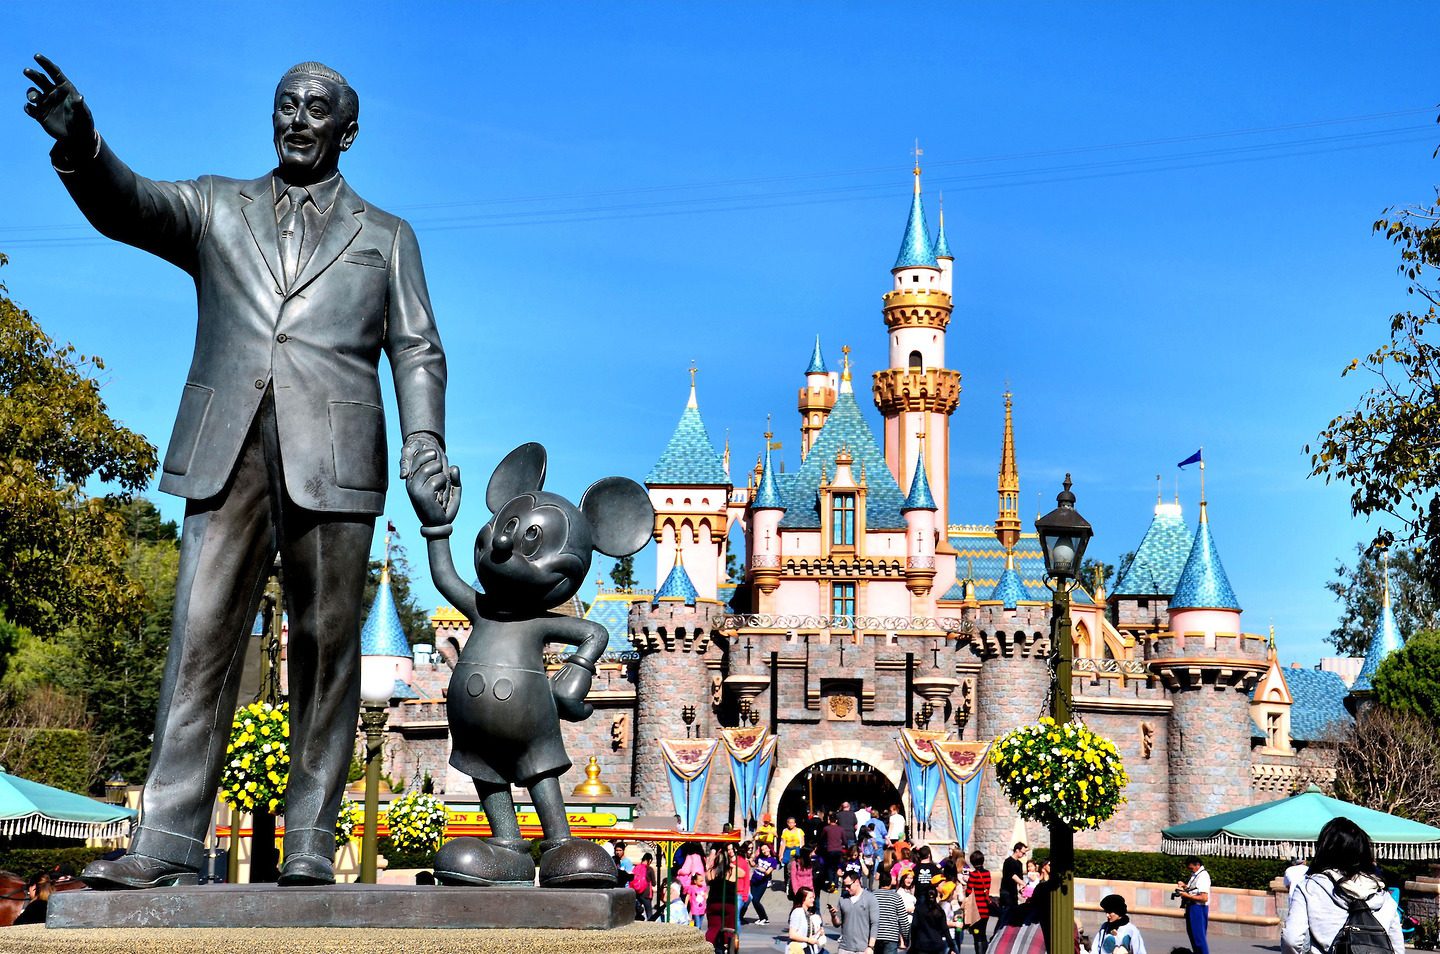 Уолт дисней создал. Уолт Дисней Диснейленд. Диснейленд (Walt Disney World), Флорида. Статуя Уолта Диснея. Памятник Уолту Диснею и Микки Маусу.